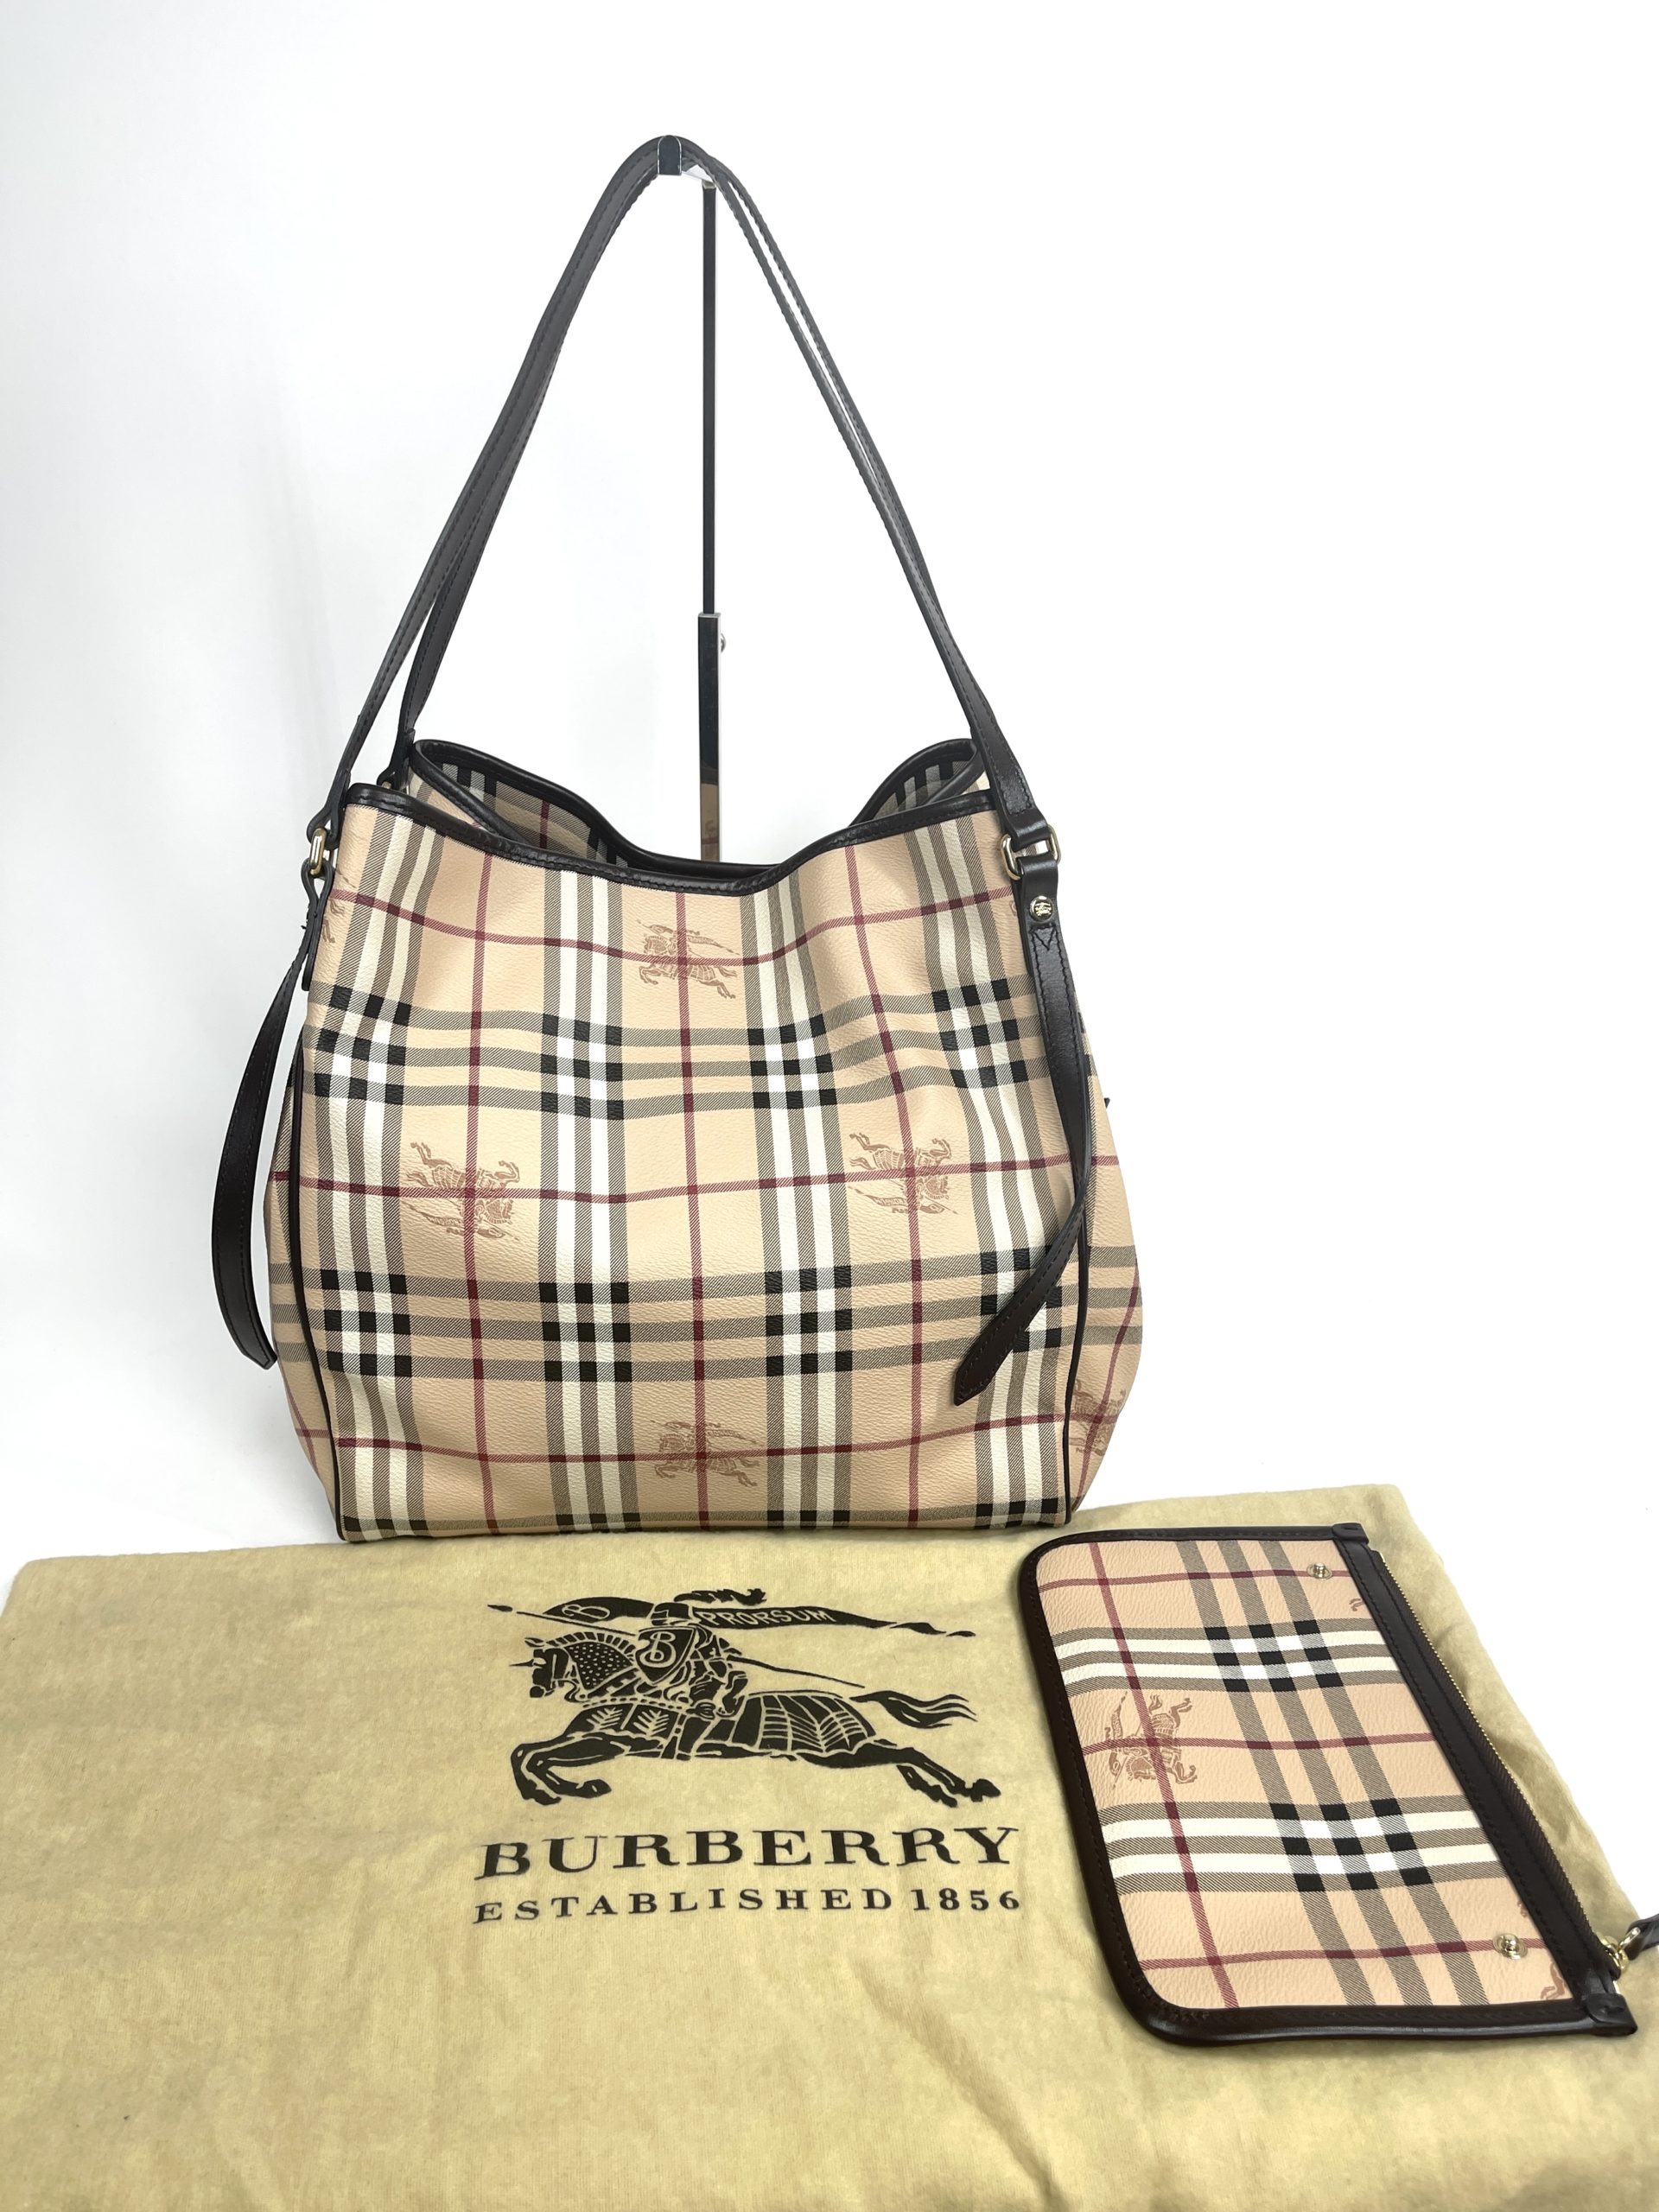 BURBERRY logo Side pocket Tote Bag Hand Bag Leather Beige